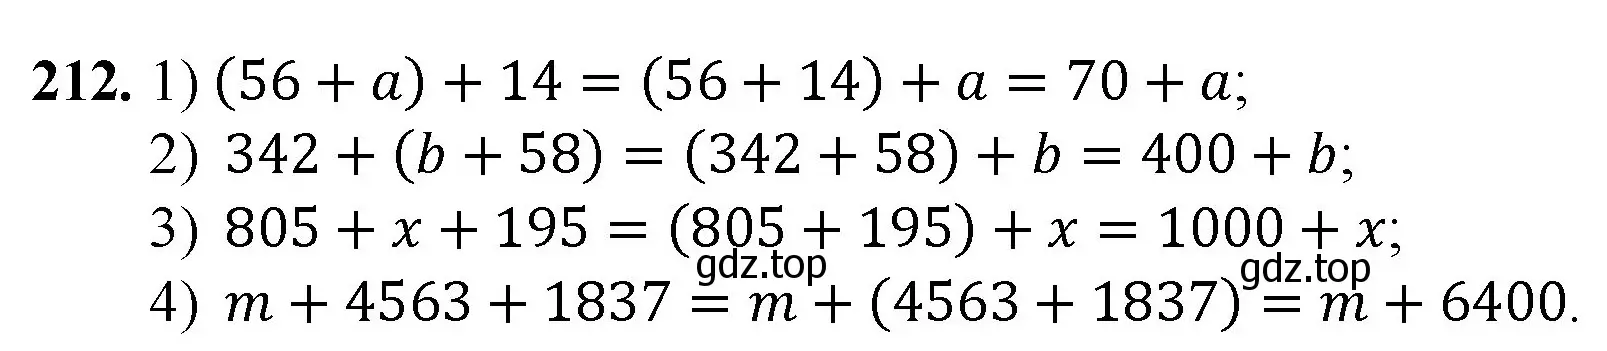 Решение номер 212 (страница 59) гдз по математике 5 класс Мерзляк, Полонский, учебник